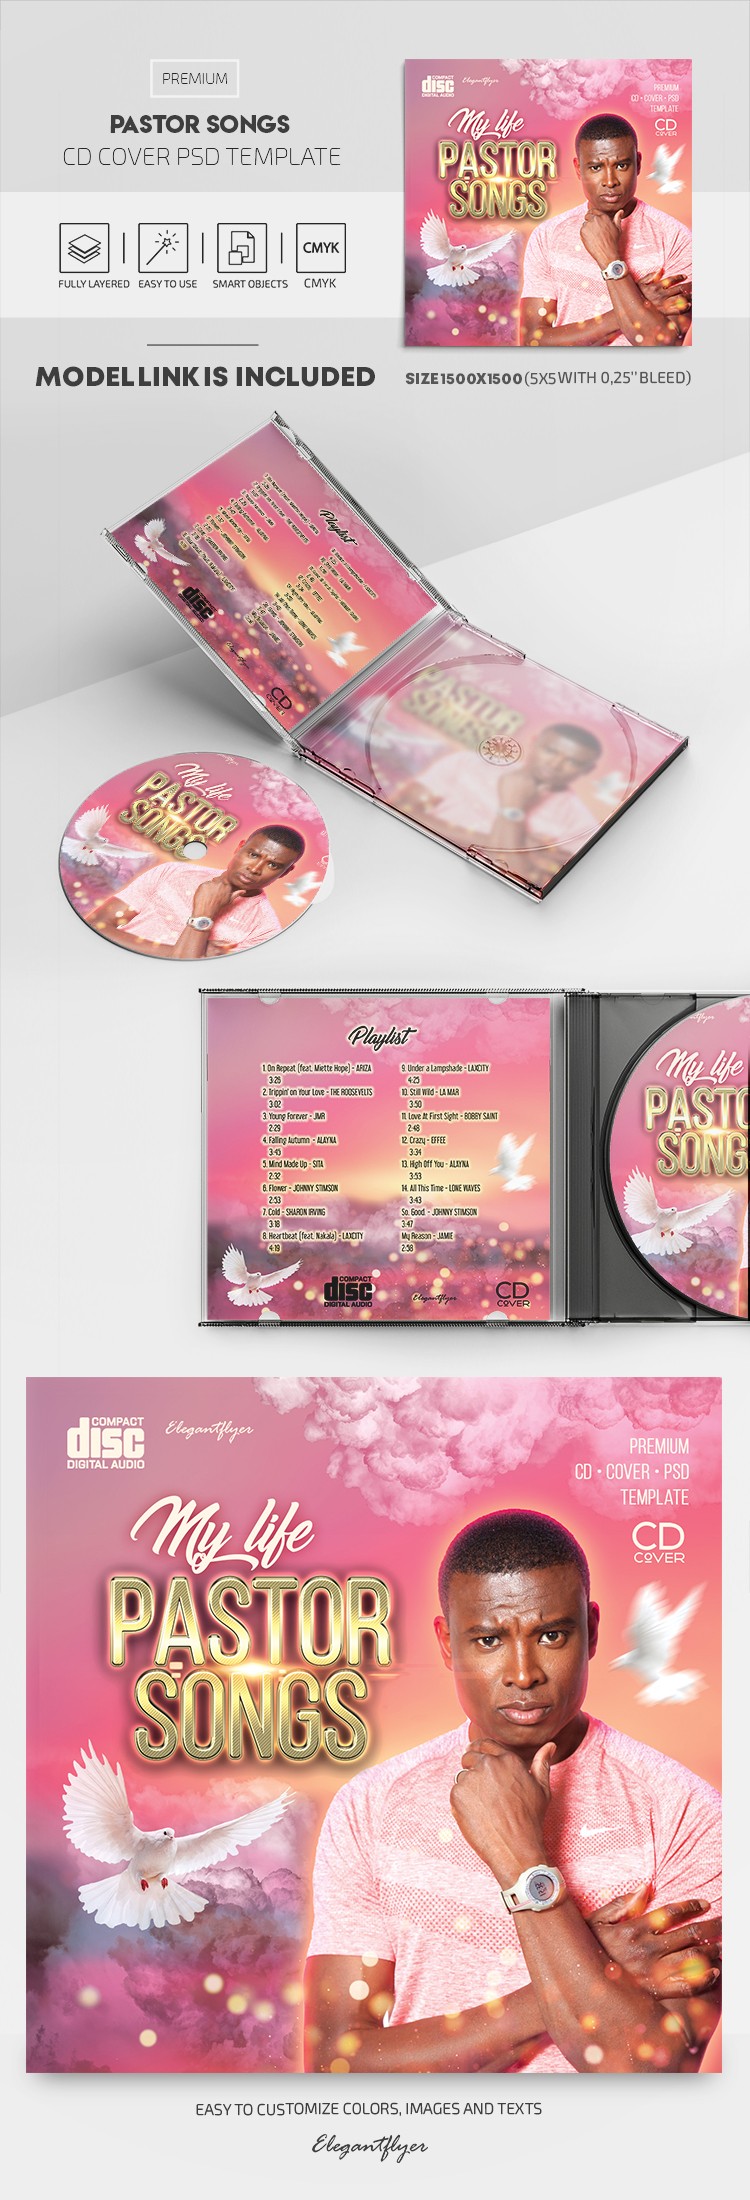 Pastor Songs CD Cover by ElegantFlyer